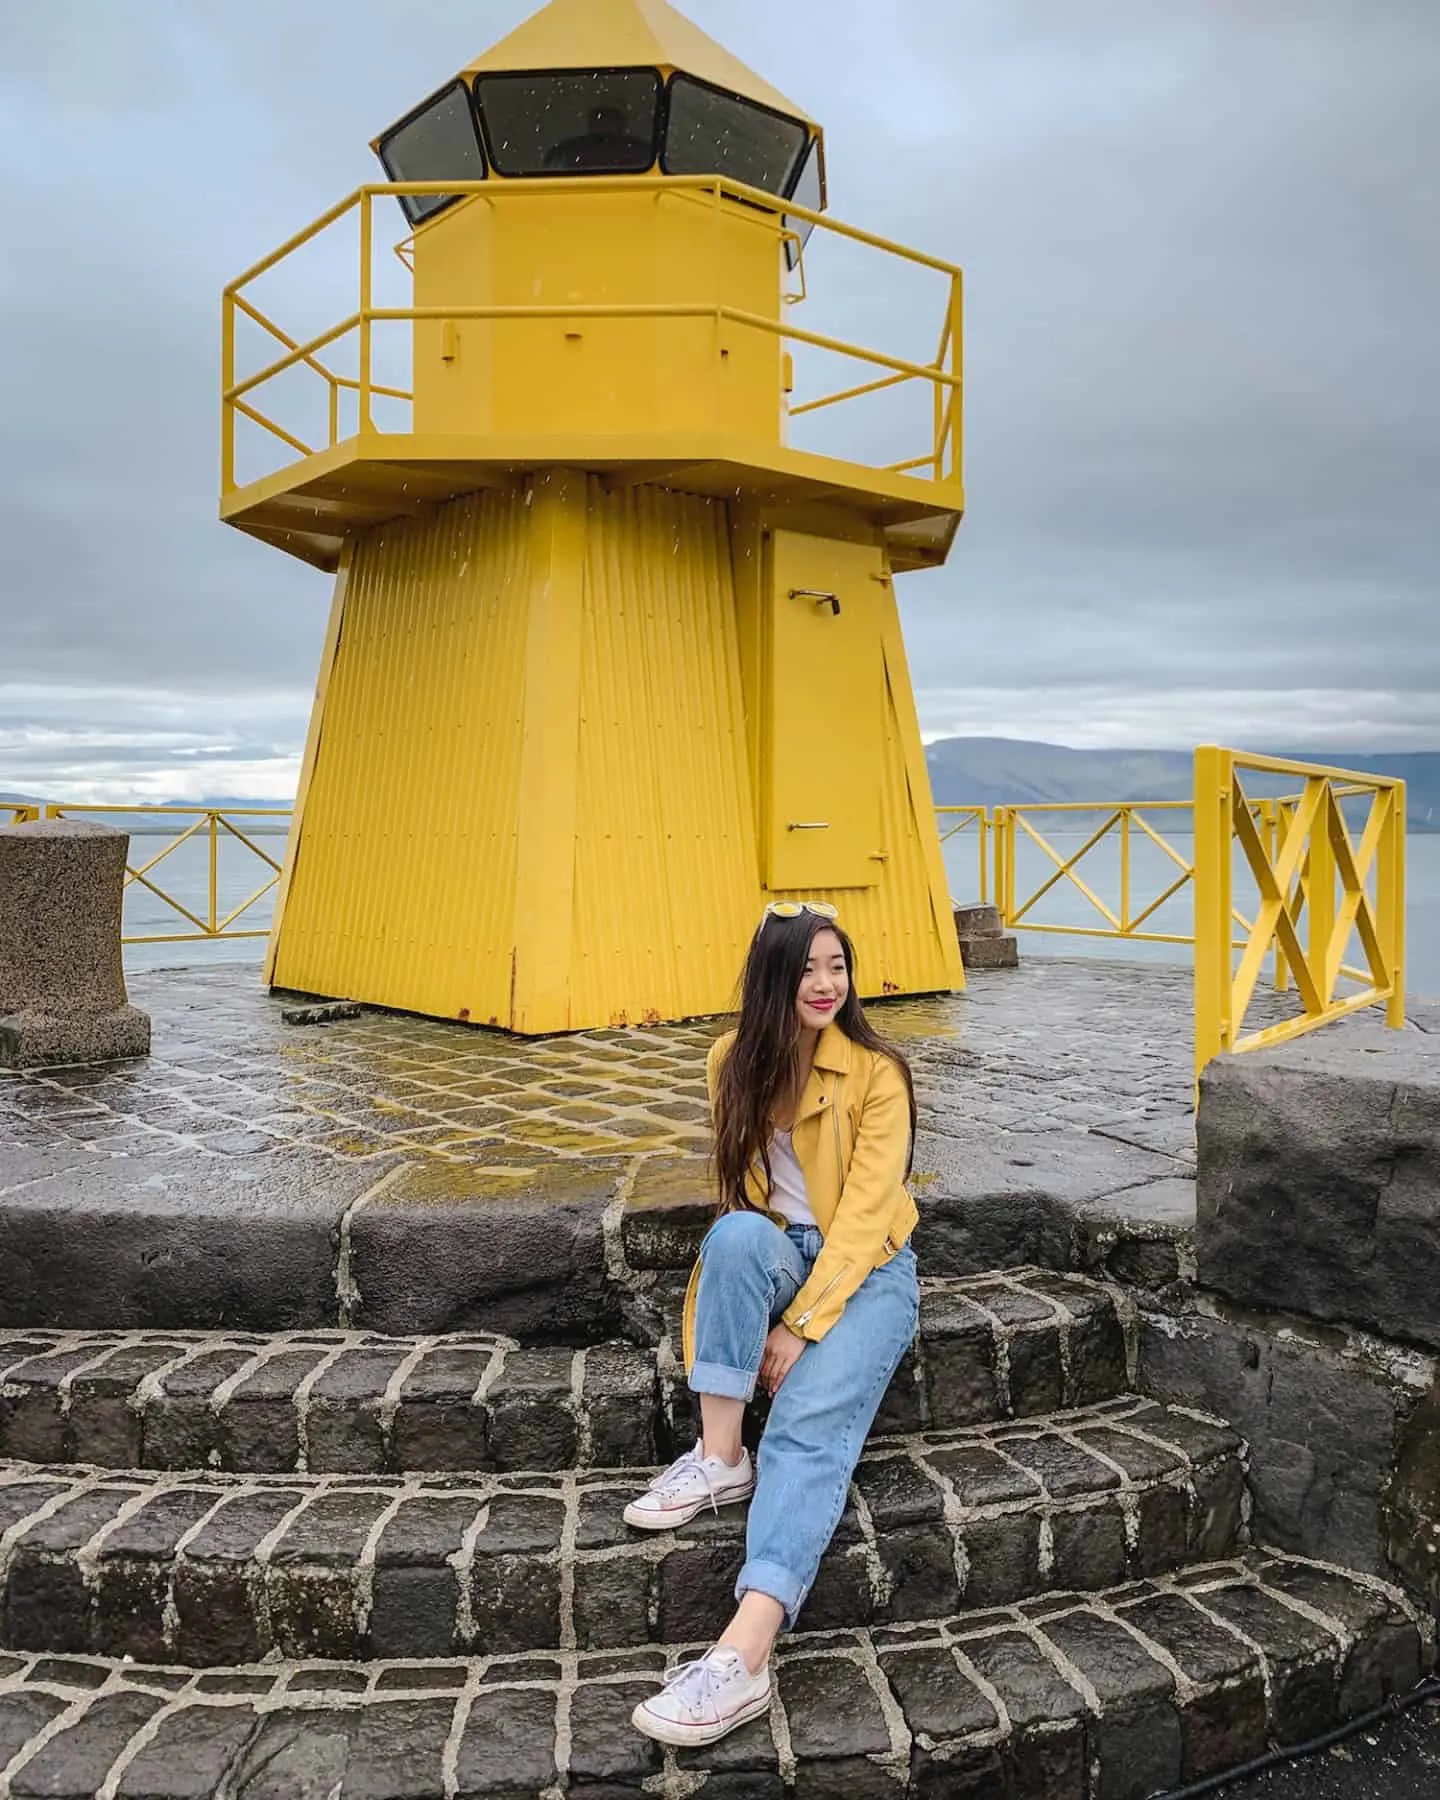 Nordurgardi yellow lighthouse in Reykjavik, Iceland